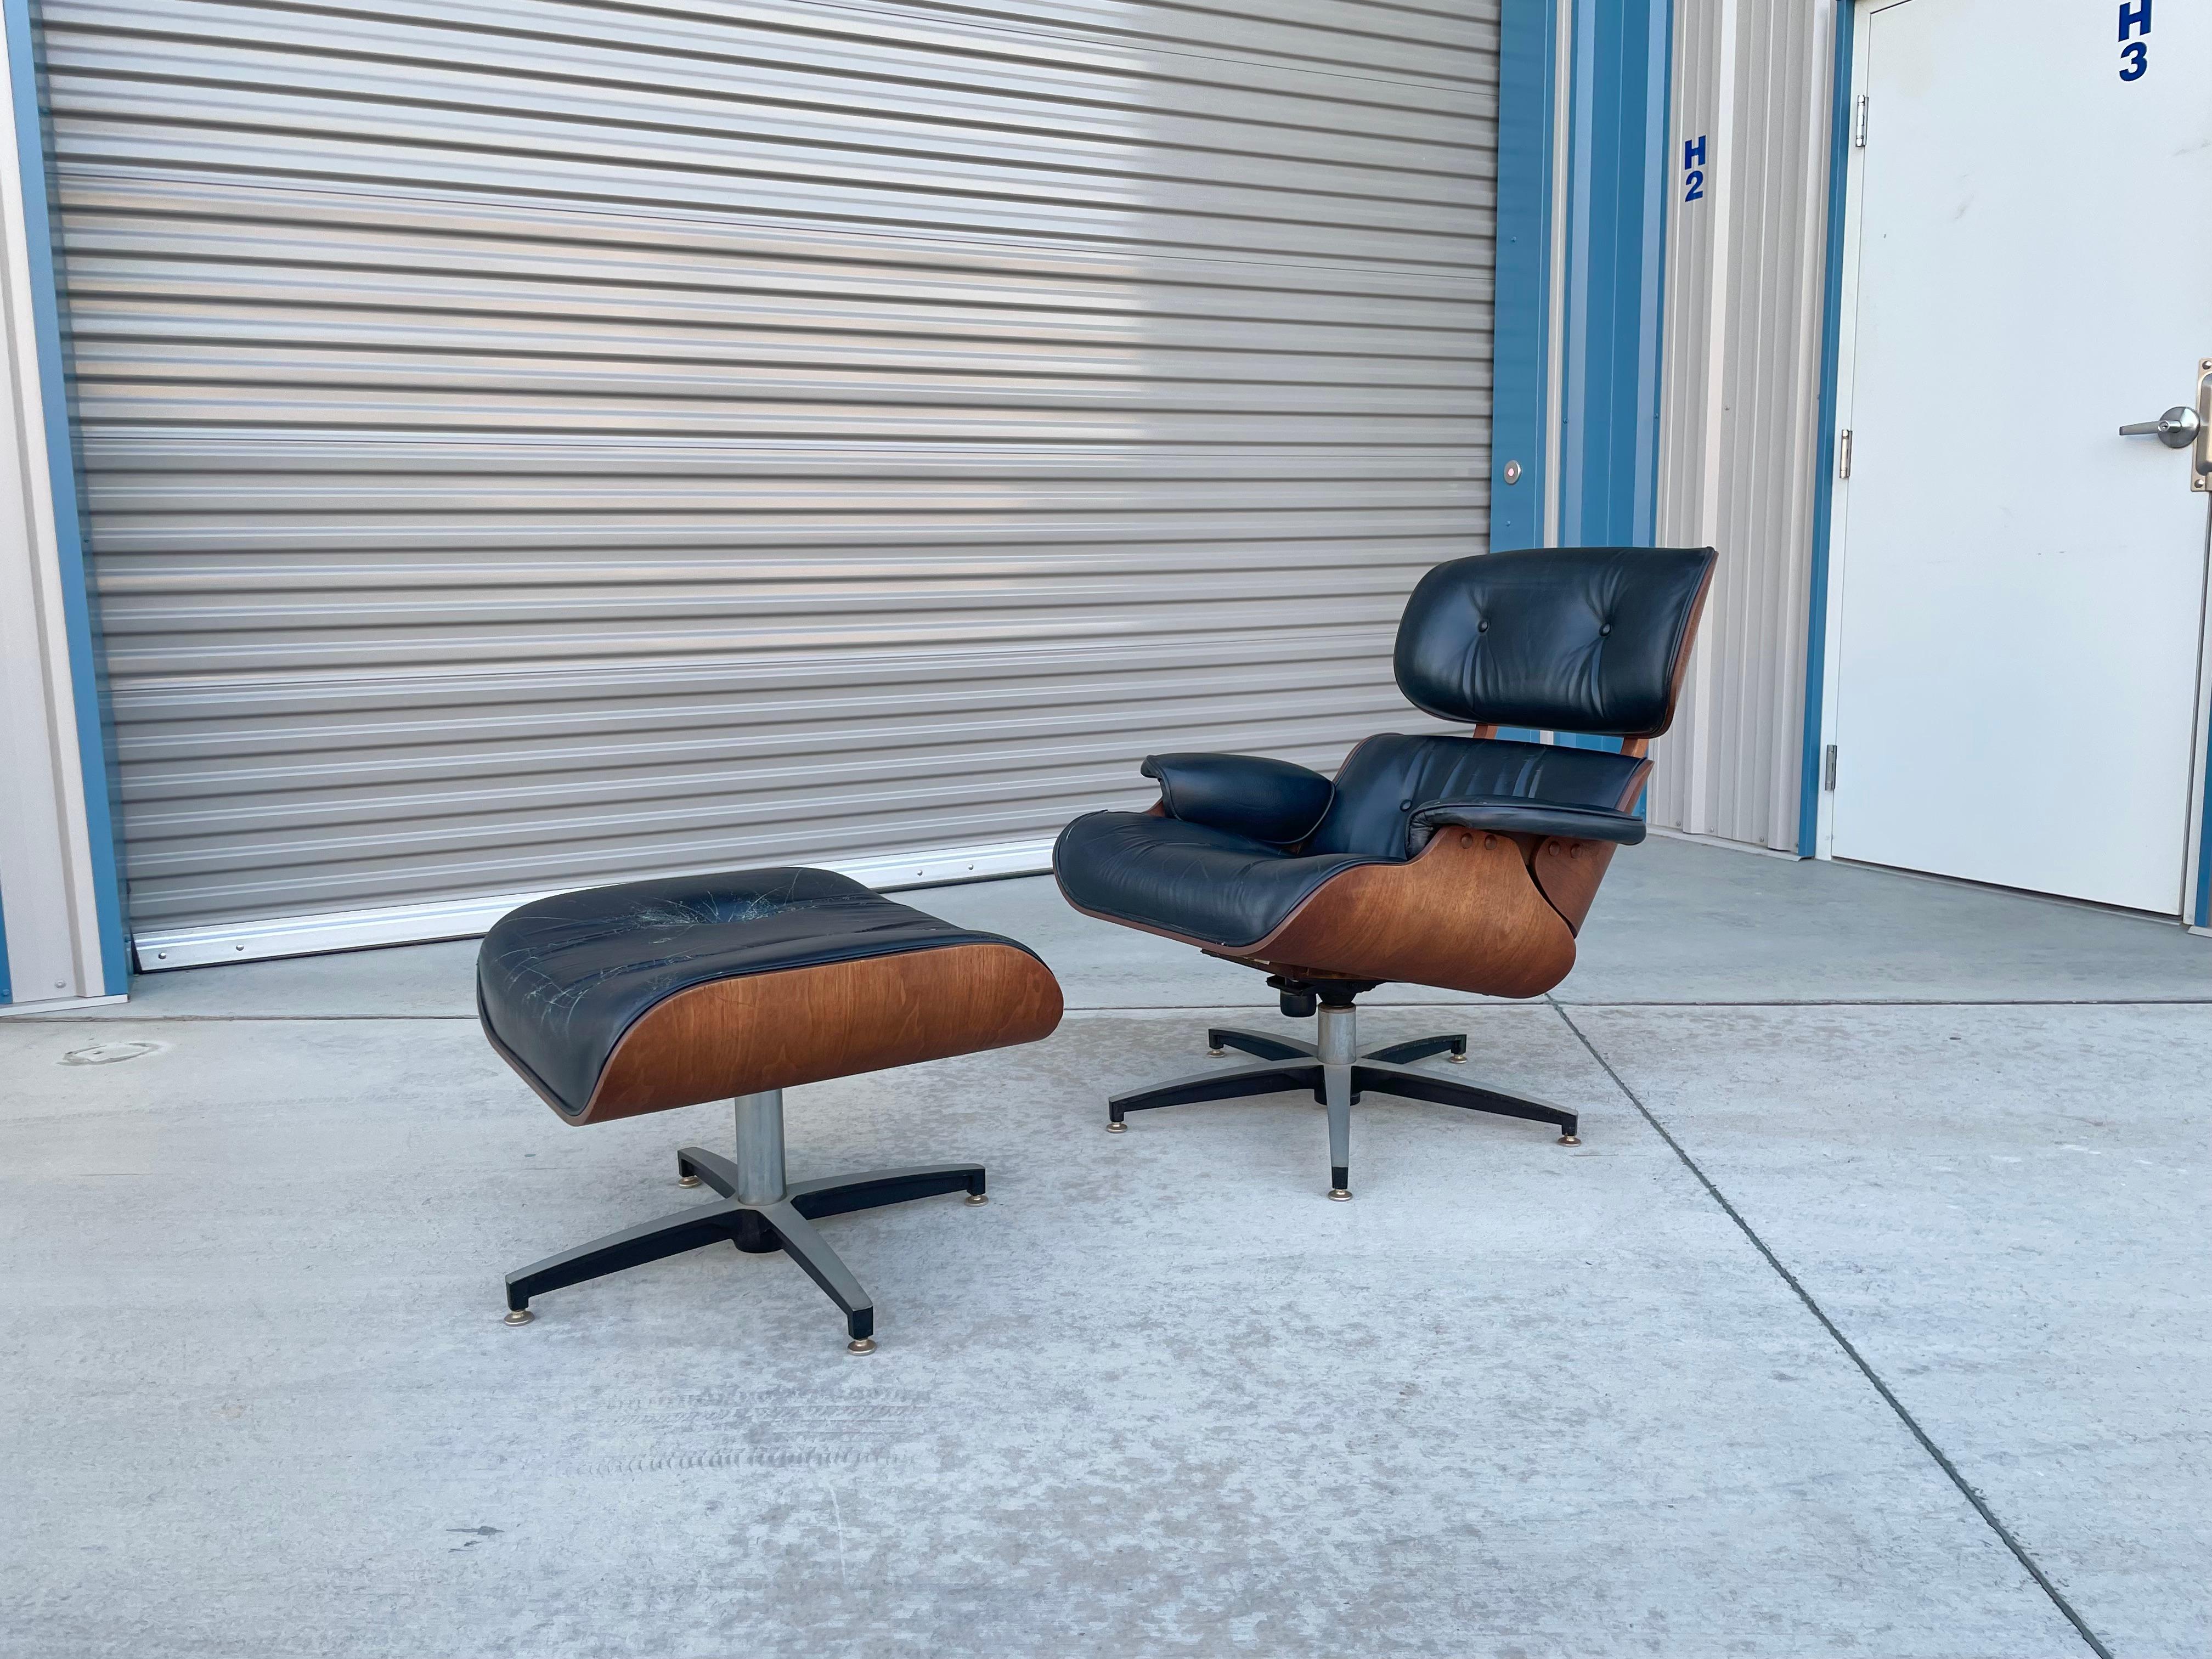 Stuhl und Ottomane aus der Mitte des Jahrhunderts, entworfen und hergestellt in den Vereinigten Staaten um 1960. Dieser schöne Stuhl mit Ottomane wurde nach dem Vorbild von Herman Miller gestaltet. Dieses Set besteht aus einem Gestell aus